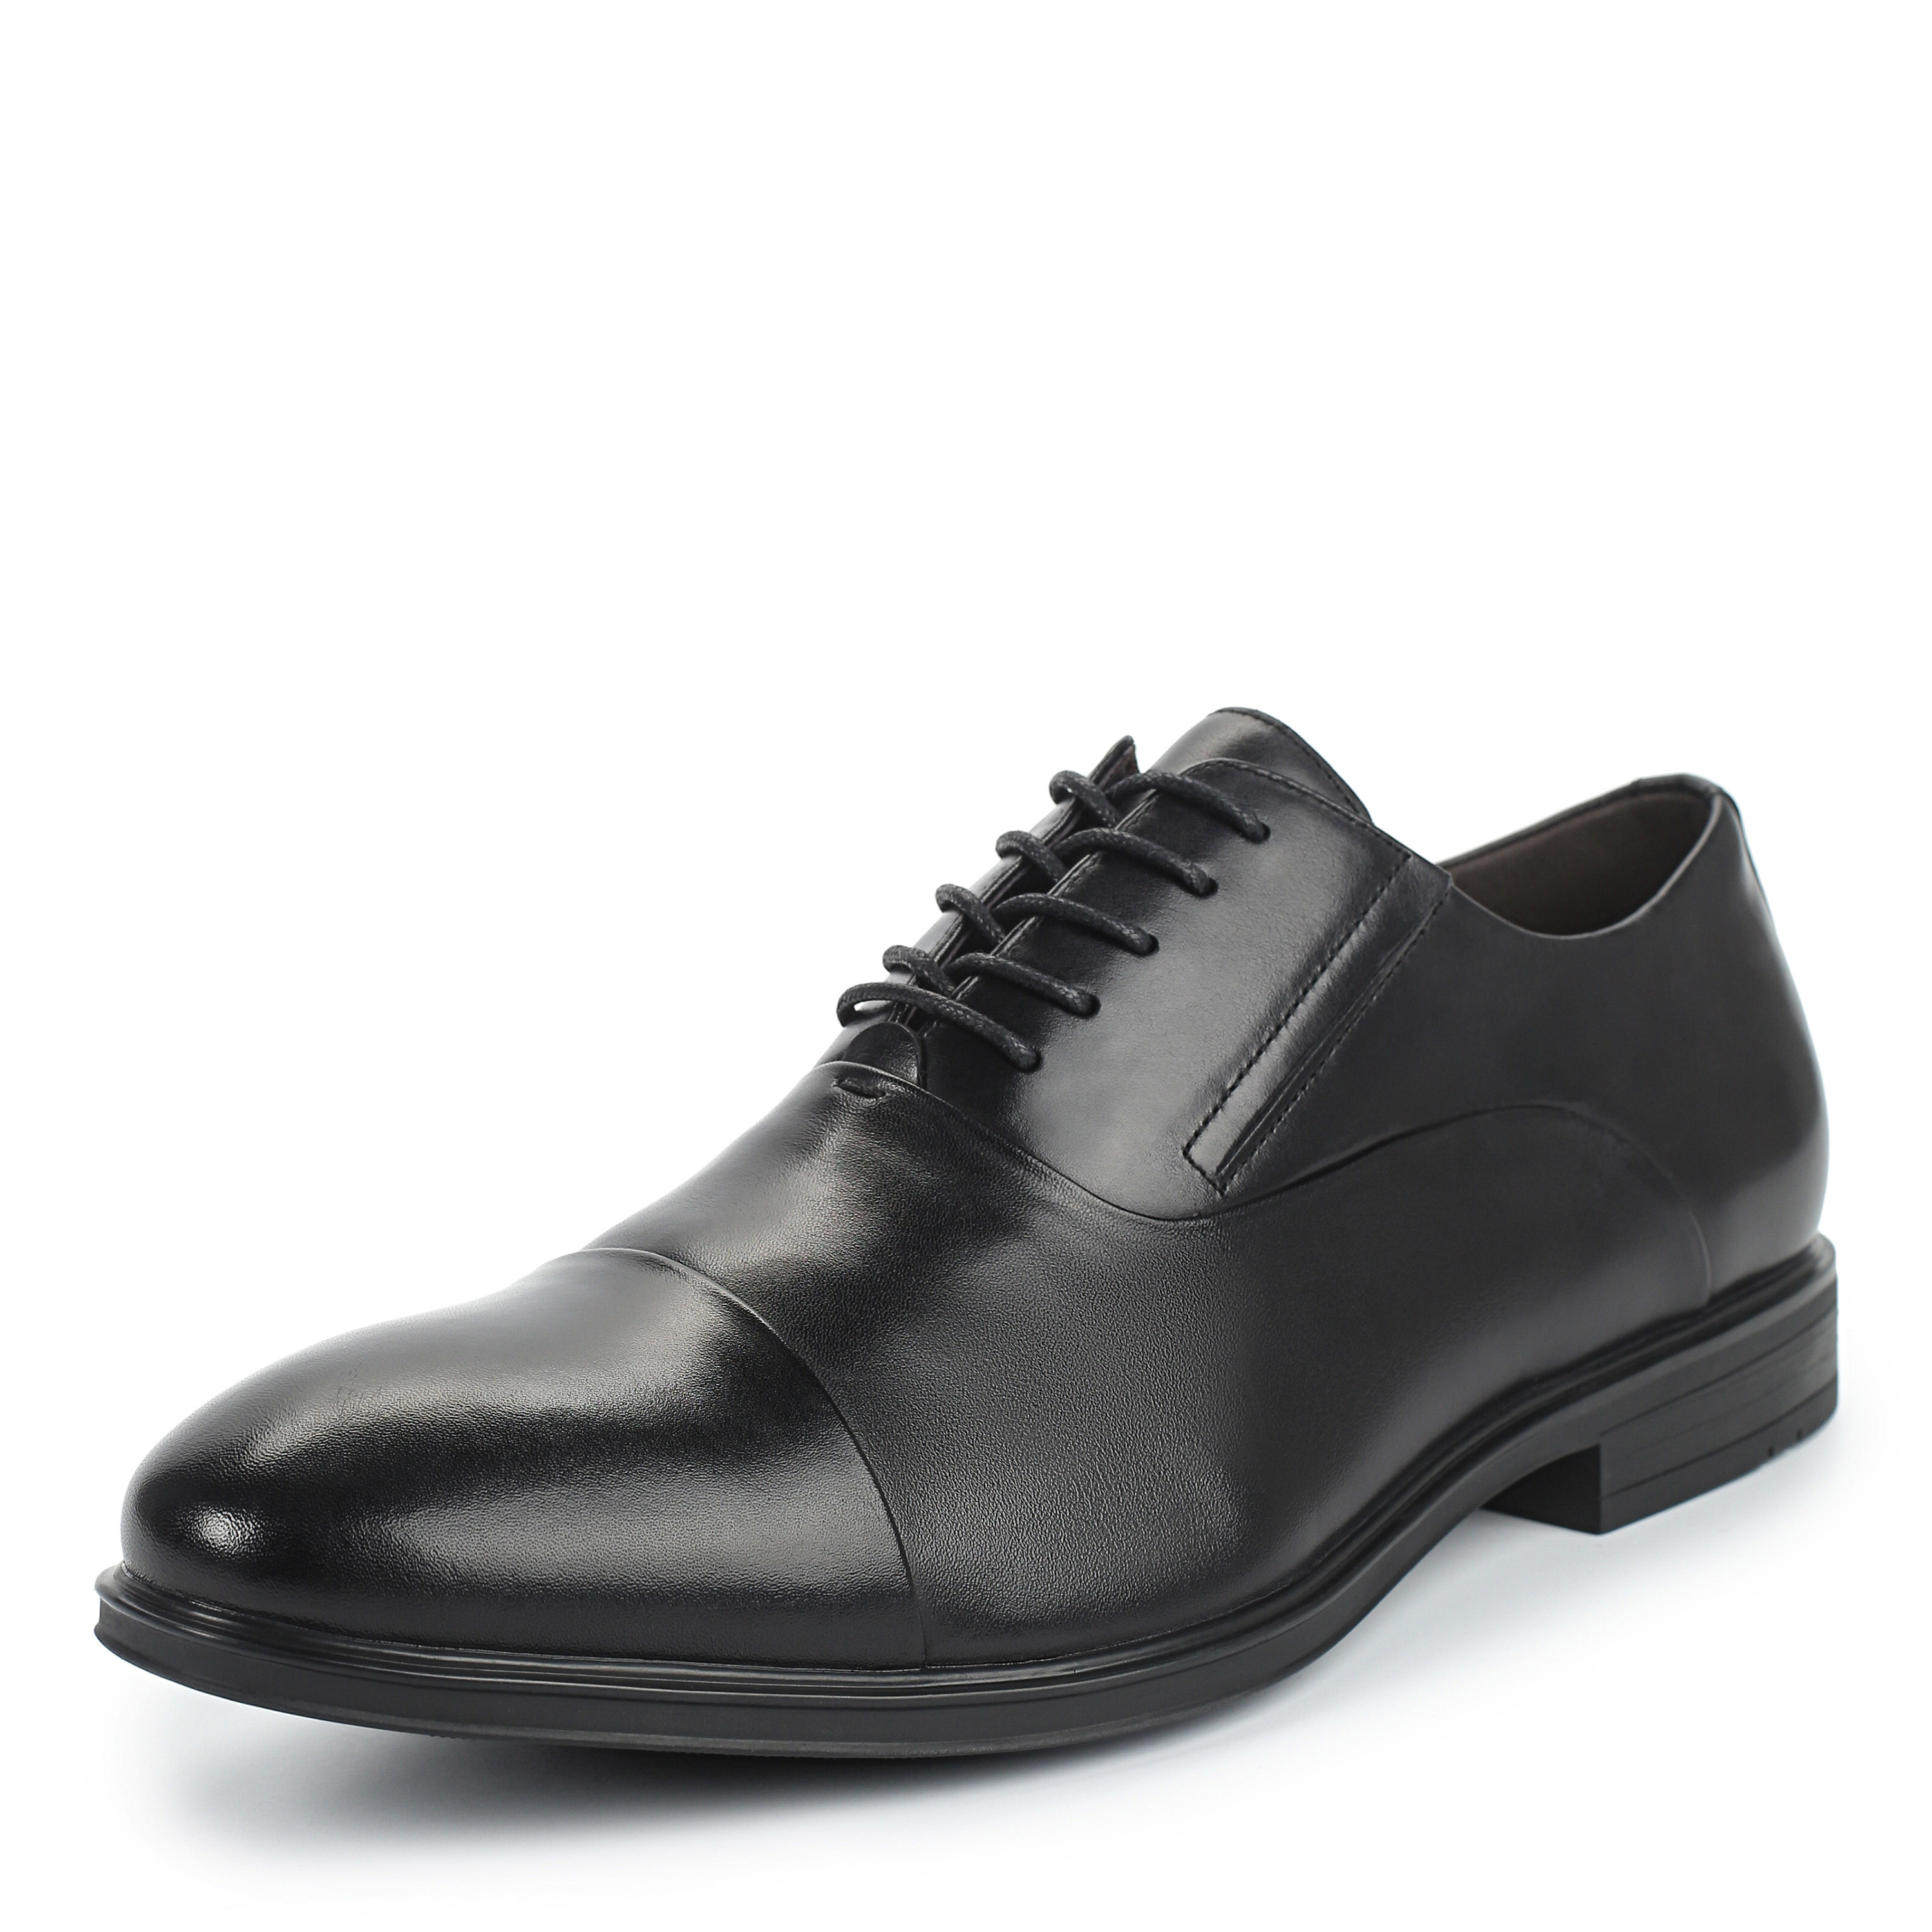 Туфли Thomas Munz 73-133C-1101, цвет черный, размер 41 - фото 2